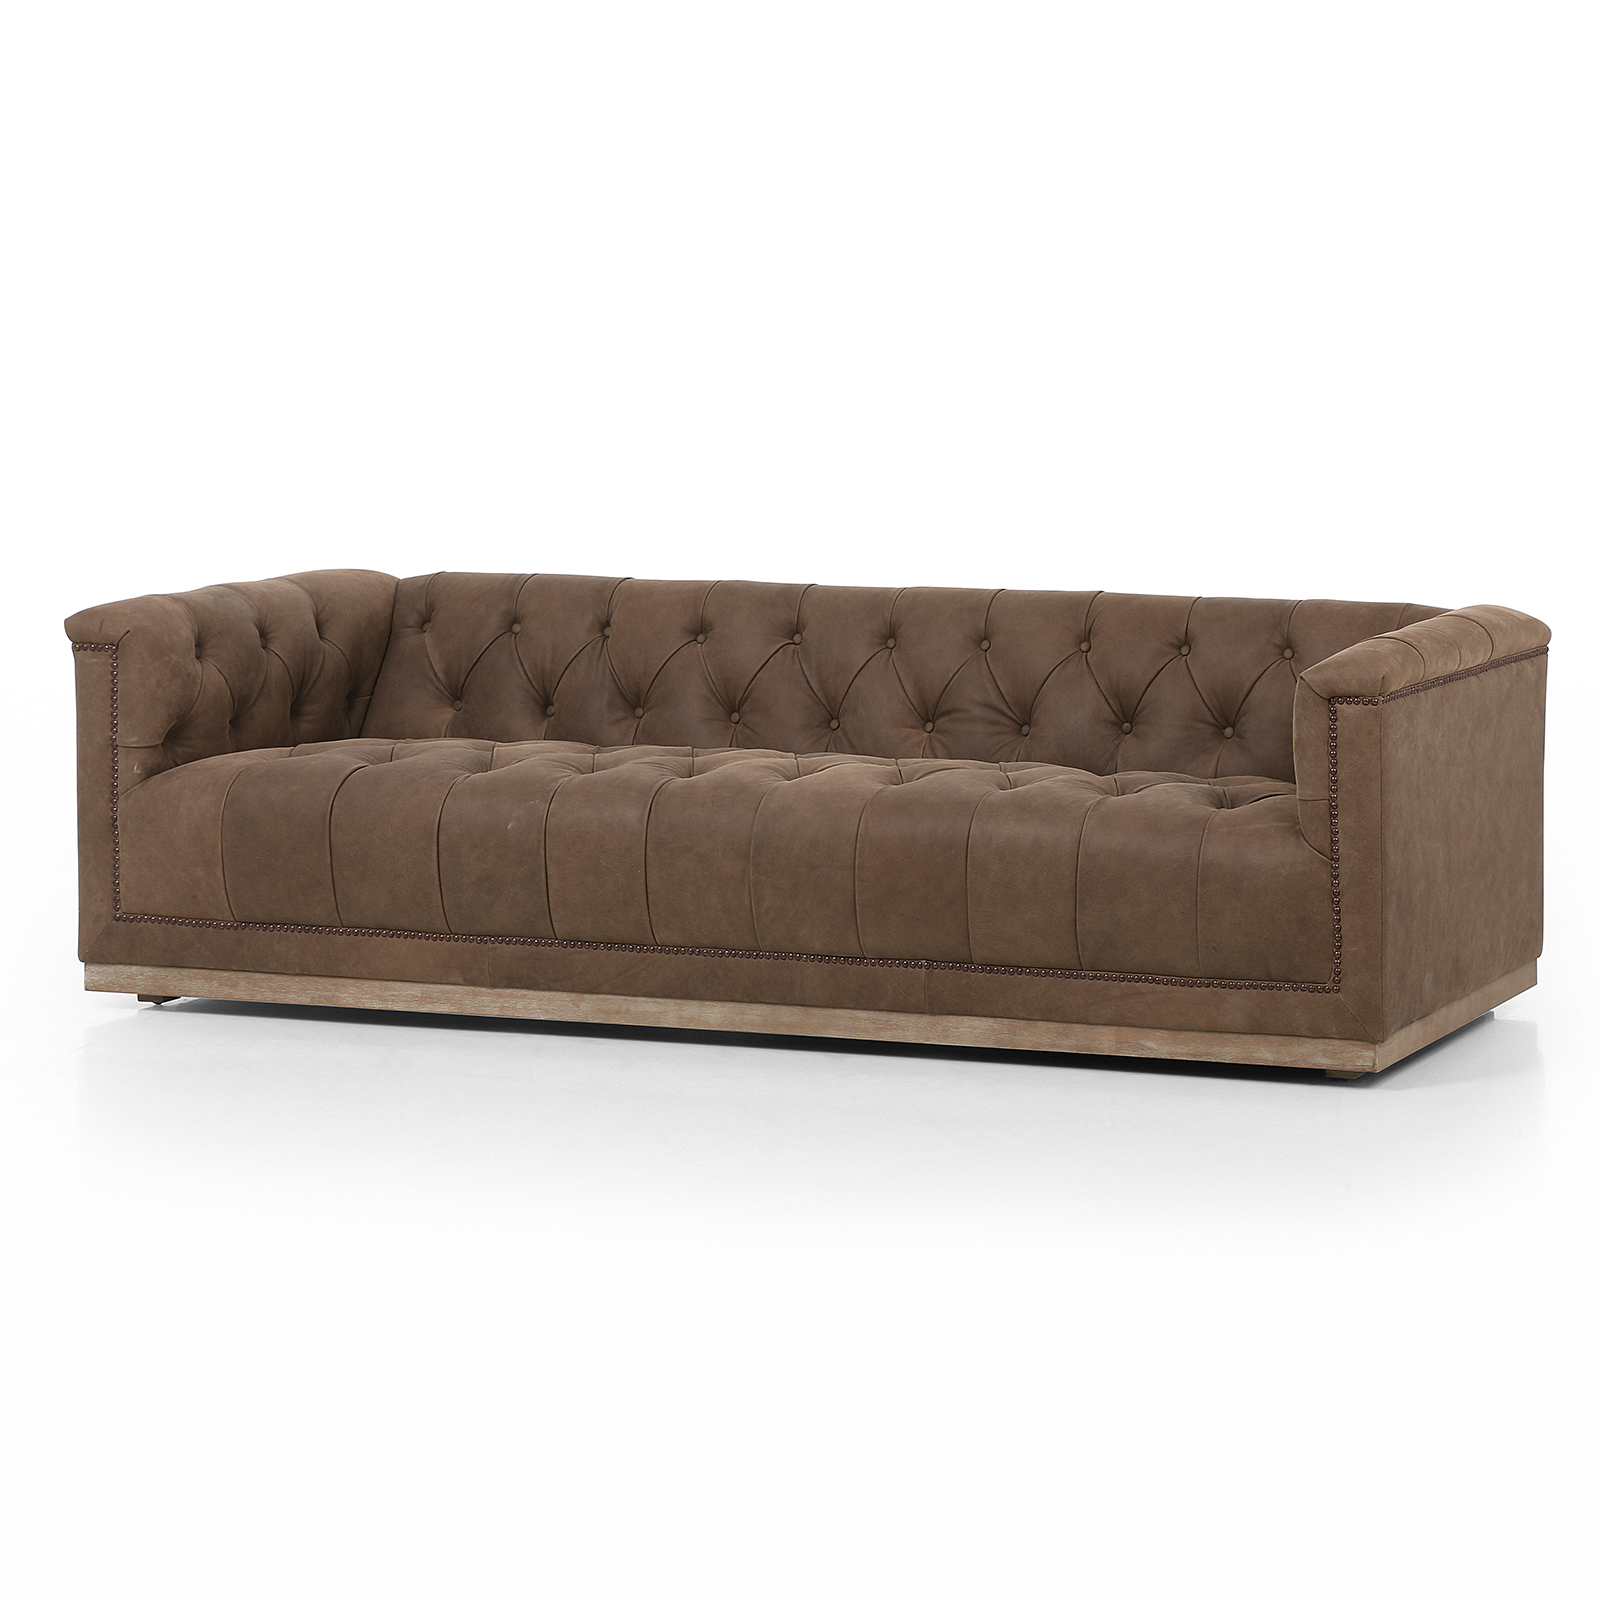 Maxx 95" Sofa